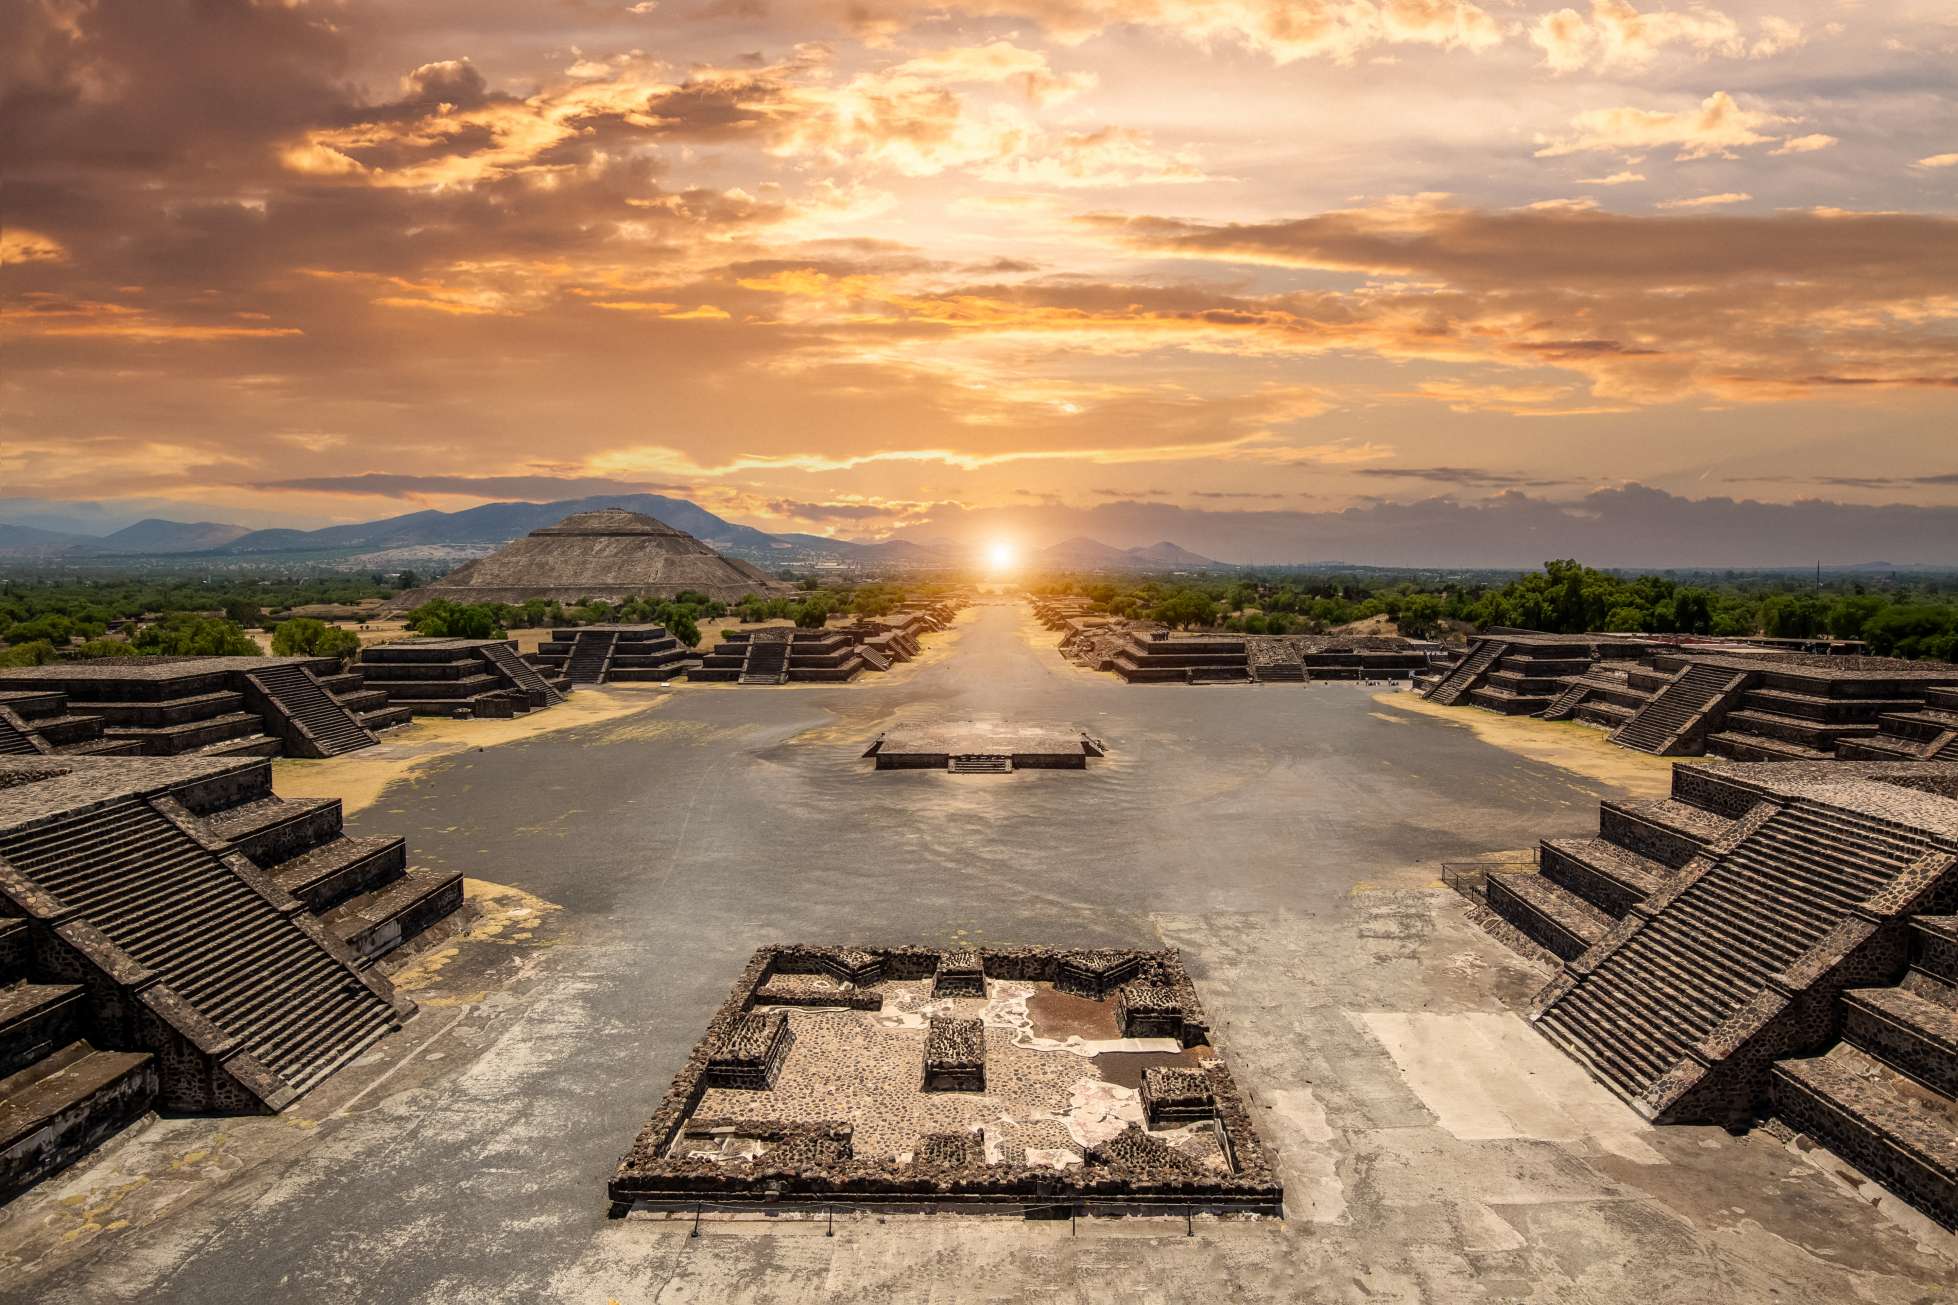 En lo profundo del corazón de México se encuentra un sitio arqueológico fascinante que ha desconcertado a los expertos durante siglos. Teotihuacán, que significa "el lugar donde fueron creados los dioses", alberga algunas de las pirámides y ruinas más impresionantes de toda América Central. El complejo de pirámides de Teotihuacán está ubicado en el Altiplano Mexicano y el Valle de México, cerca de la Ciudad de México. © iStock